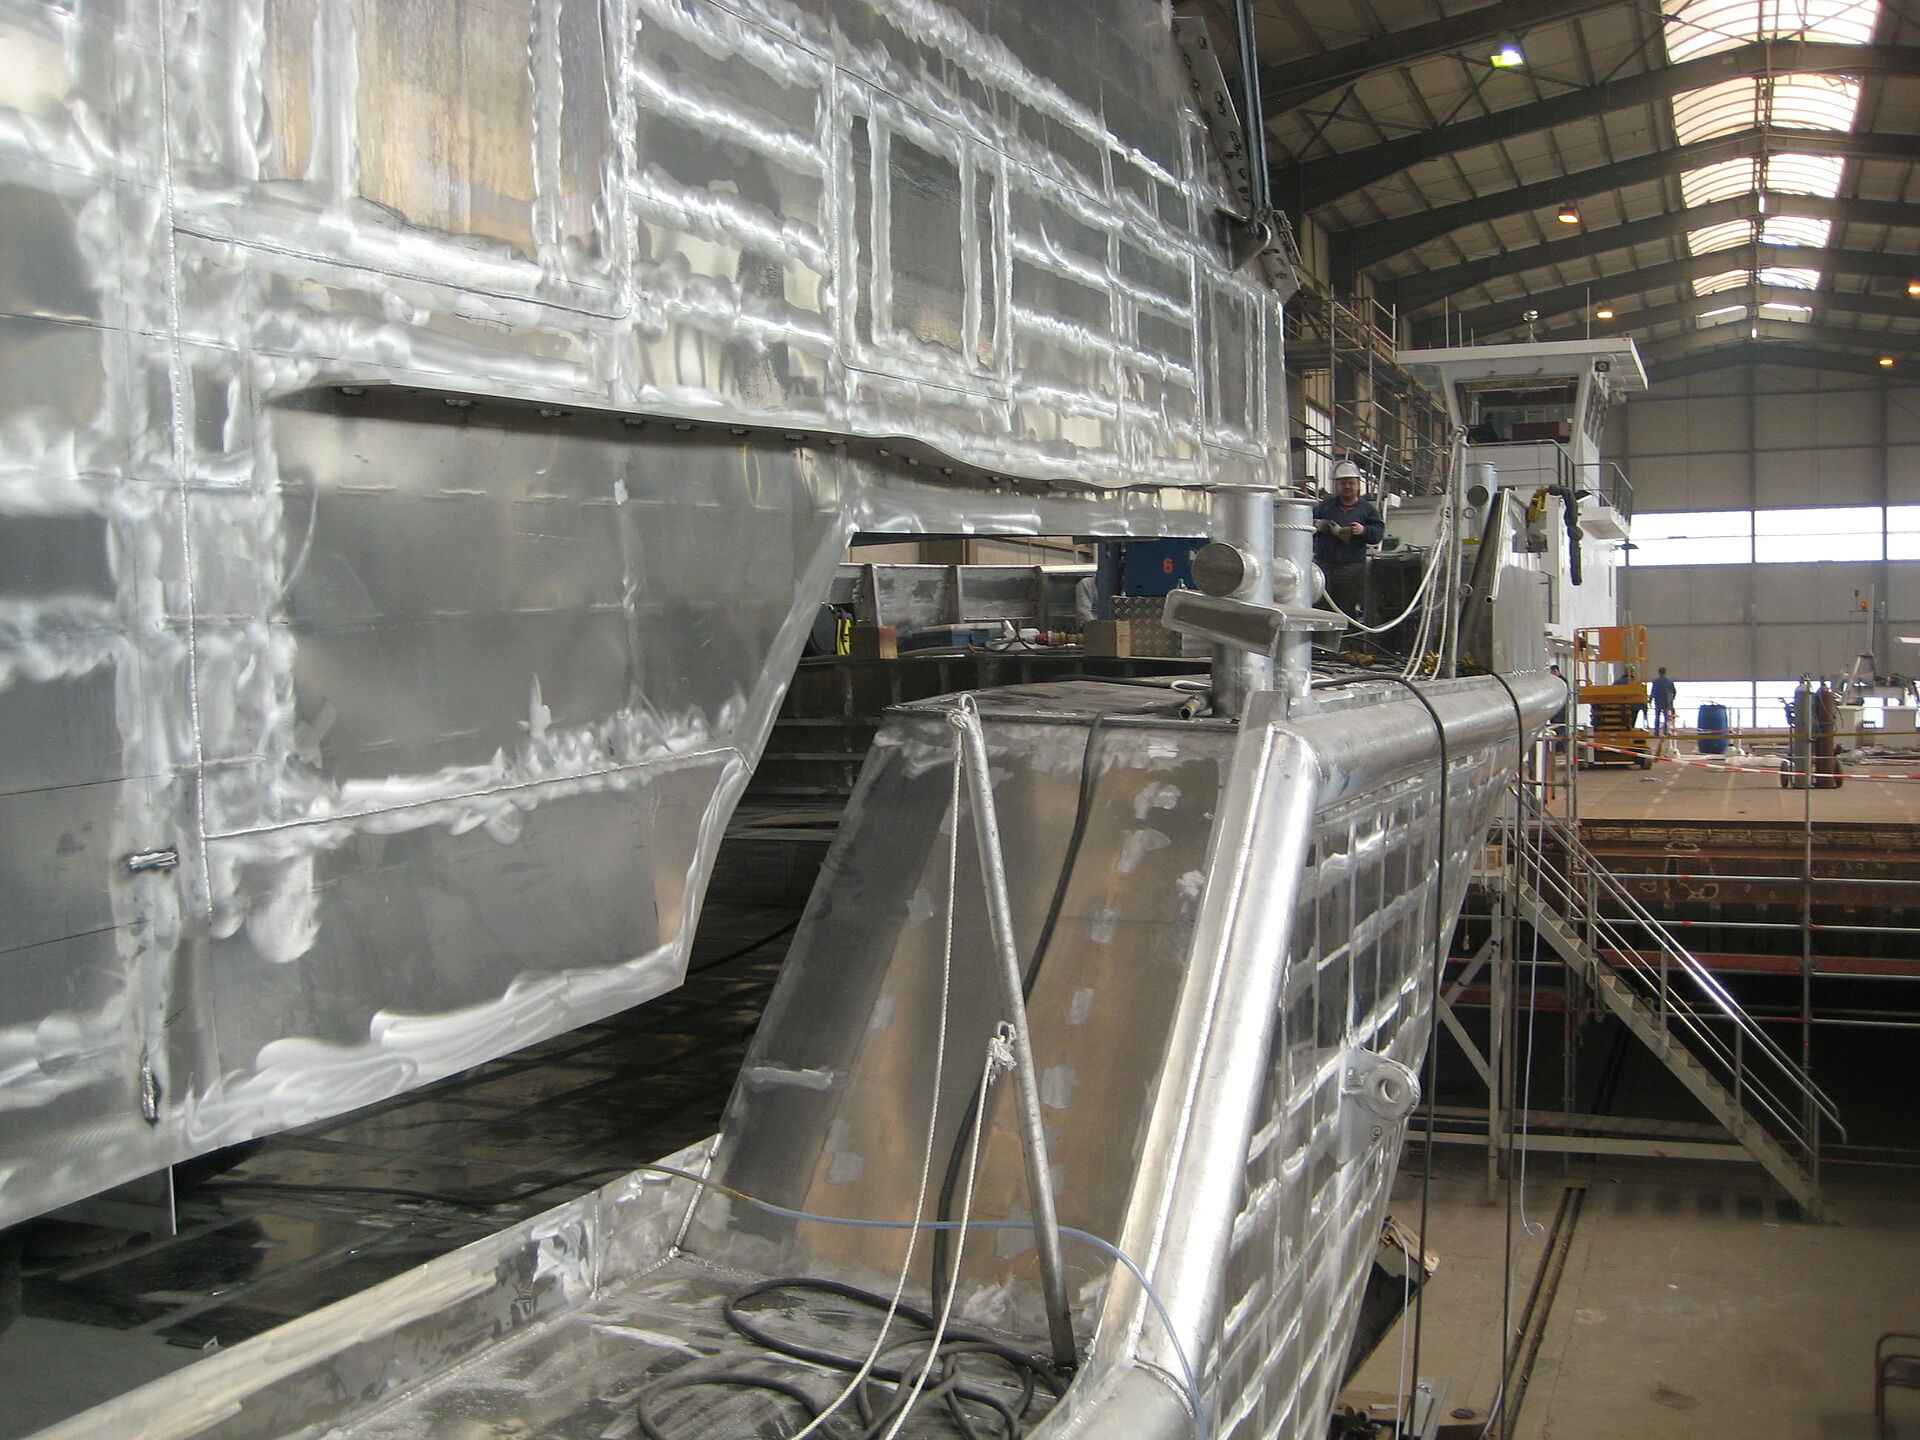 Das Deckshaus aus Aluminium wird von einem Hallenkran auf den Aluminium-Rumpf des Rohbaus des Seenotrettungskreuzers gehoben.